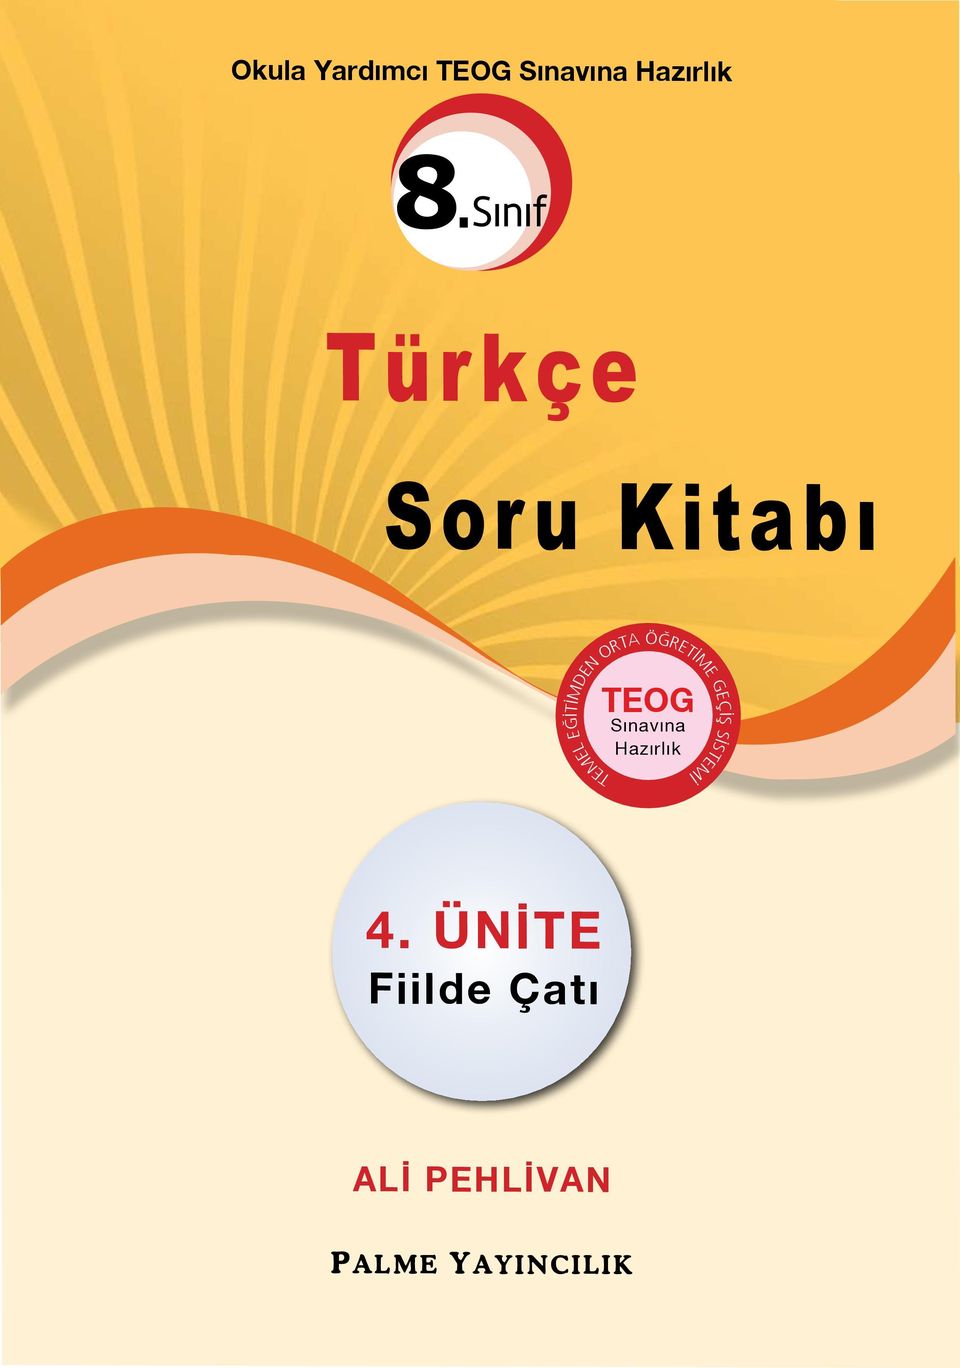 Sınıf Türkçe Soru Kitabı TEOG Sınavına